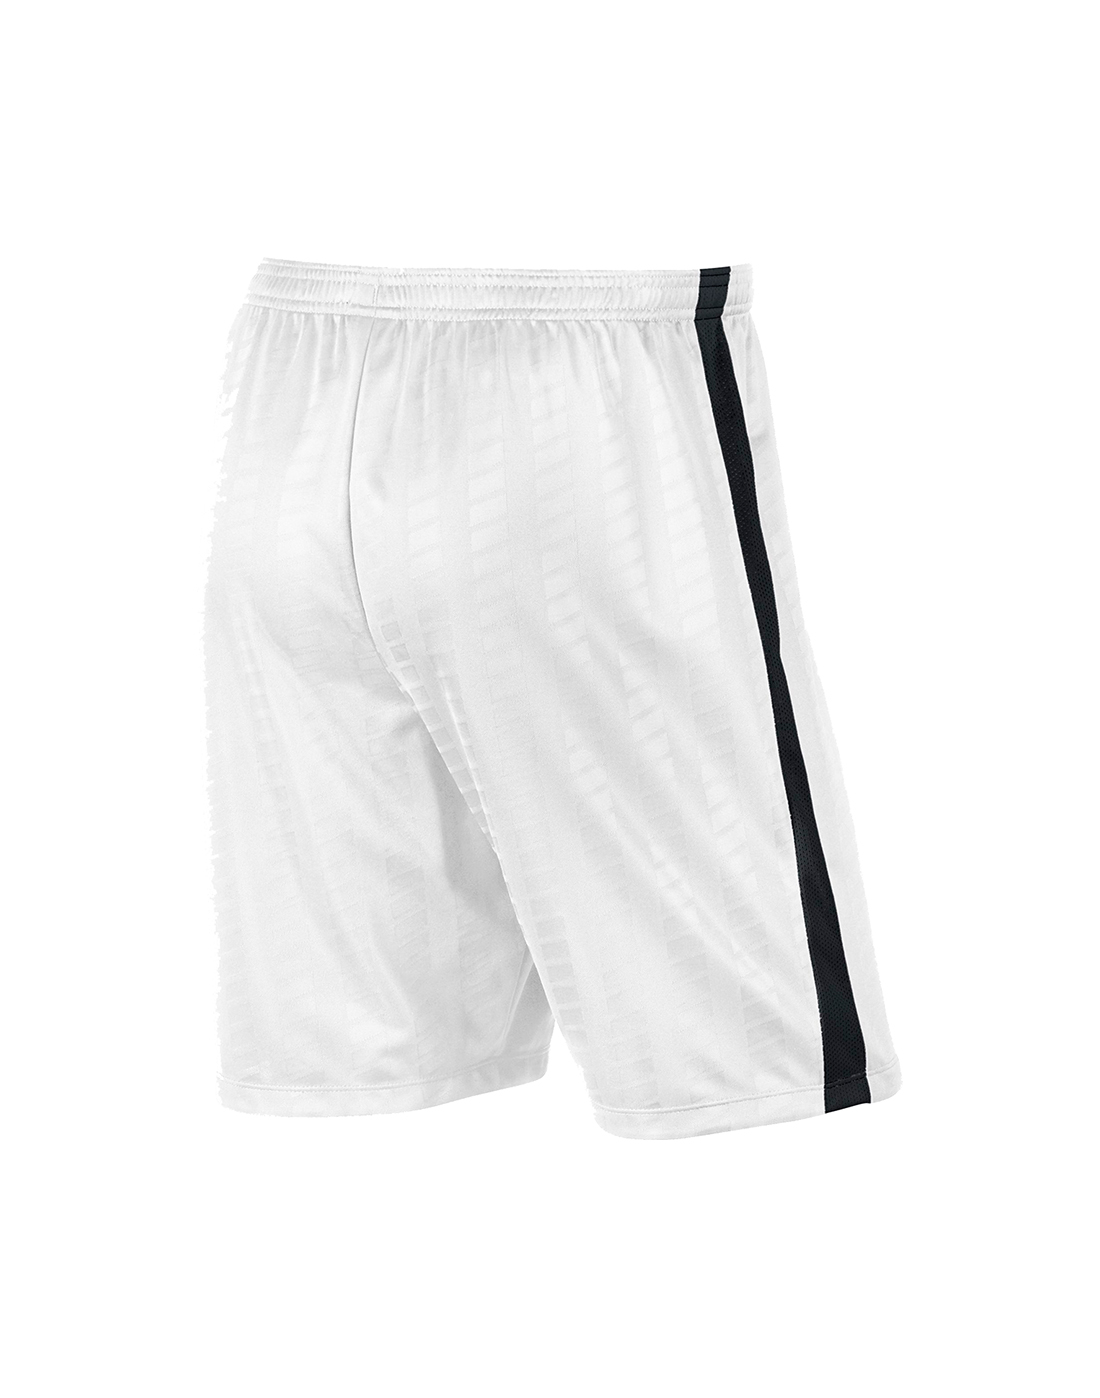 Nike Mens Jacquard Dri Fit Shorts - White | Life Style Sports IE